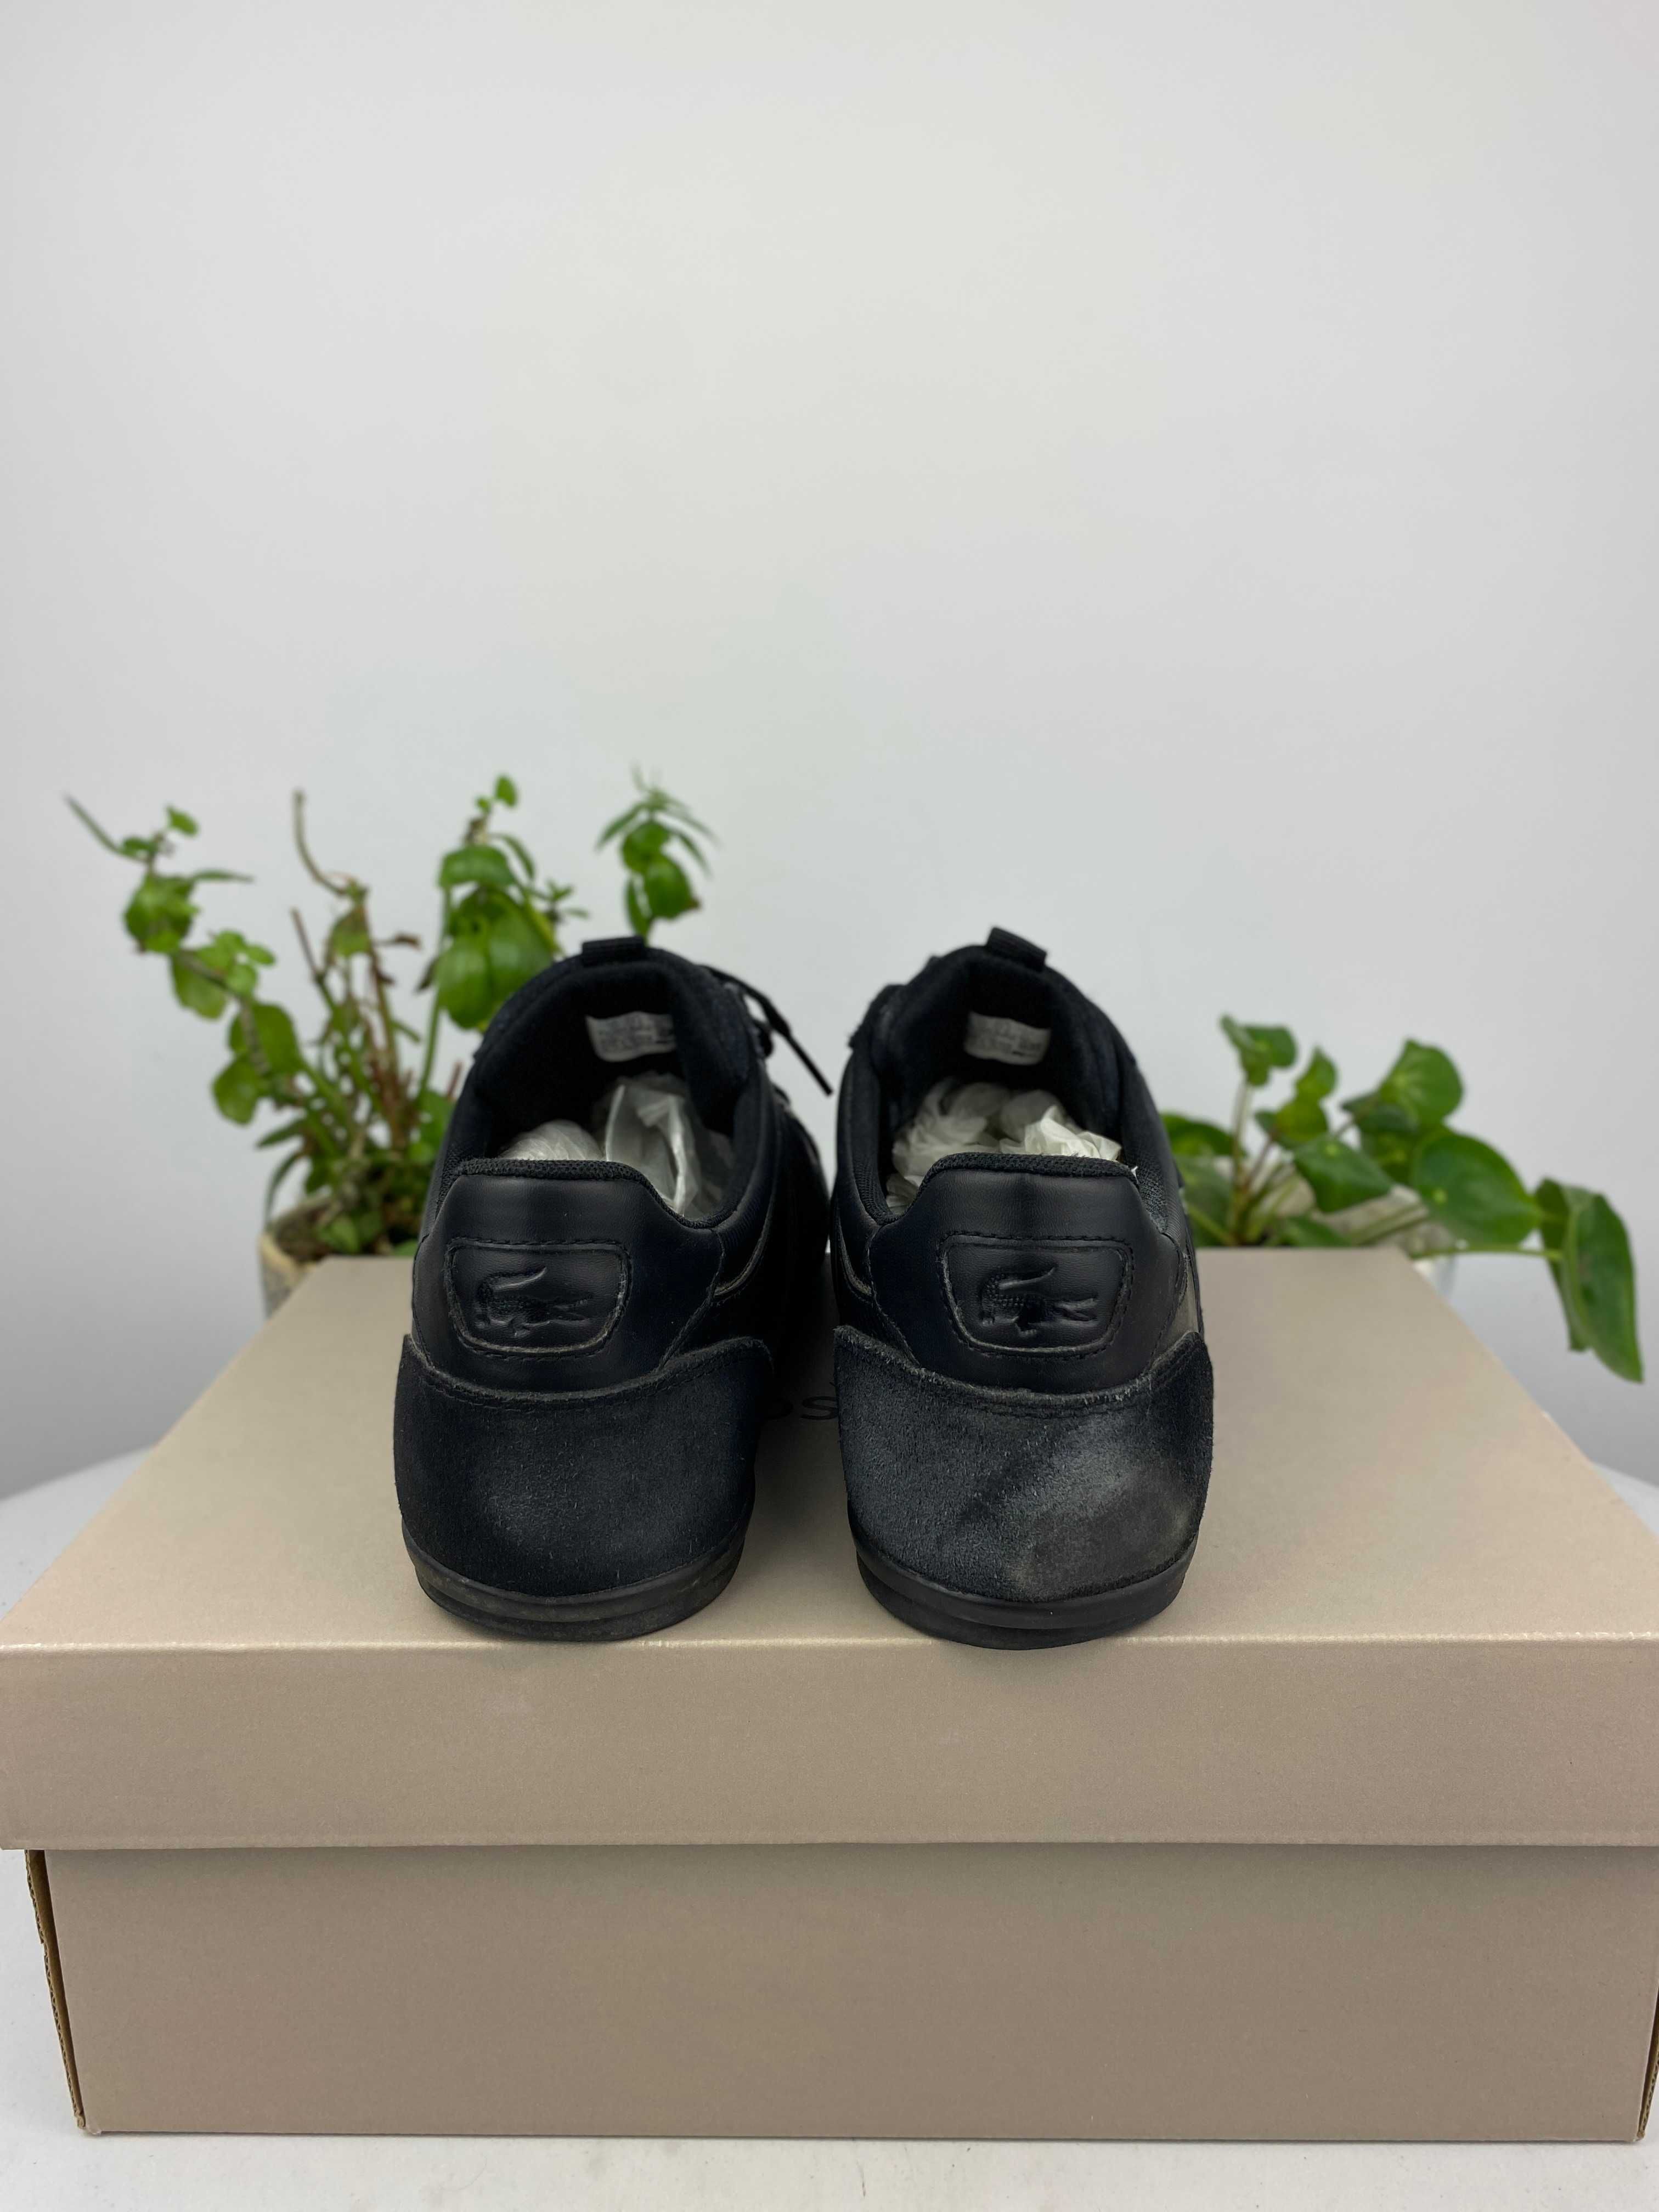 czarne buty sneakersy lacoste chaymon bl22 2 cma r. 44,5 n225